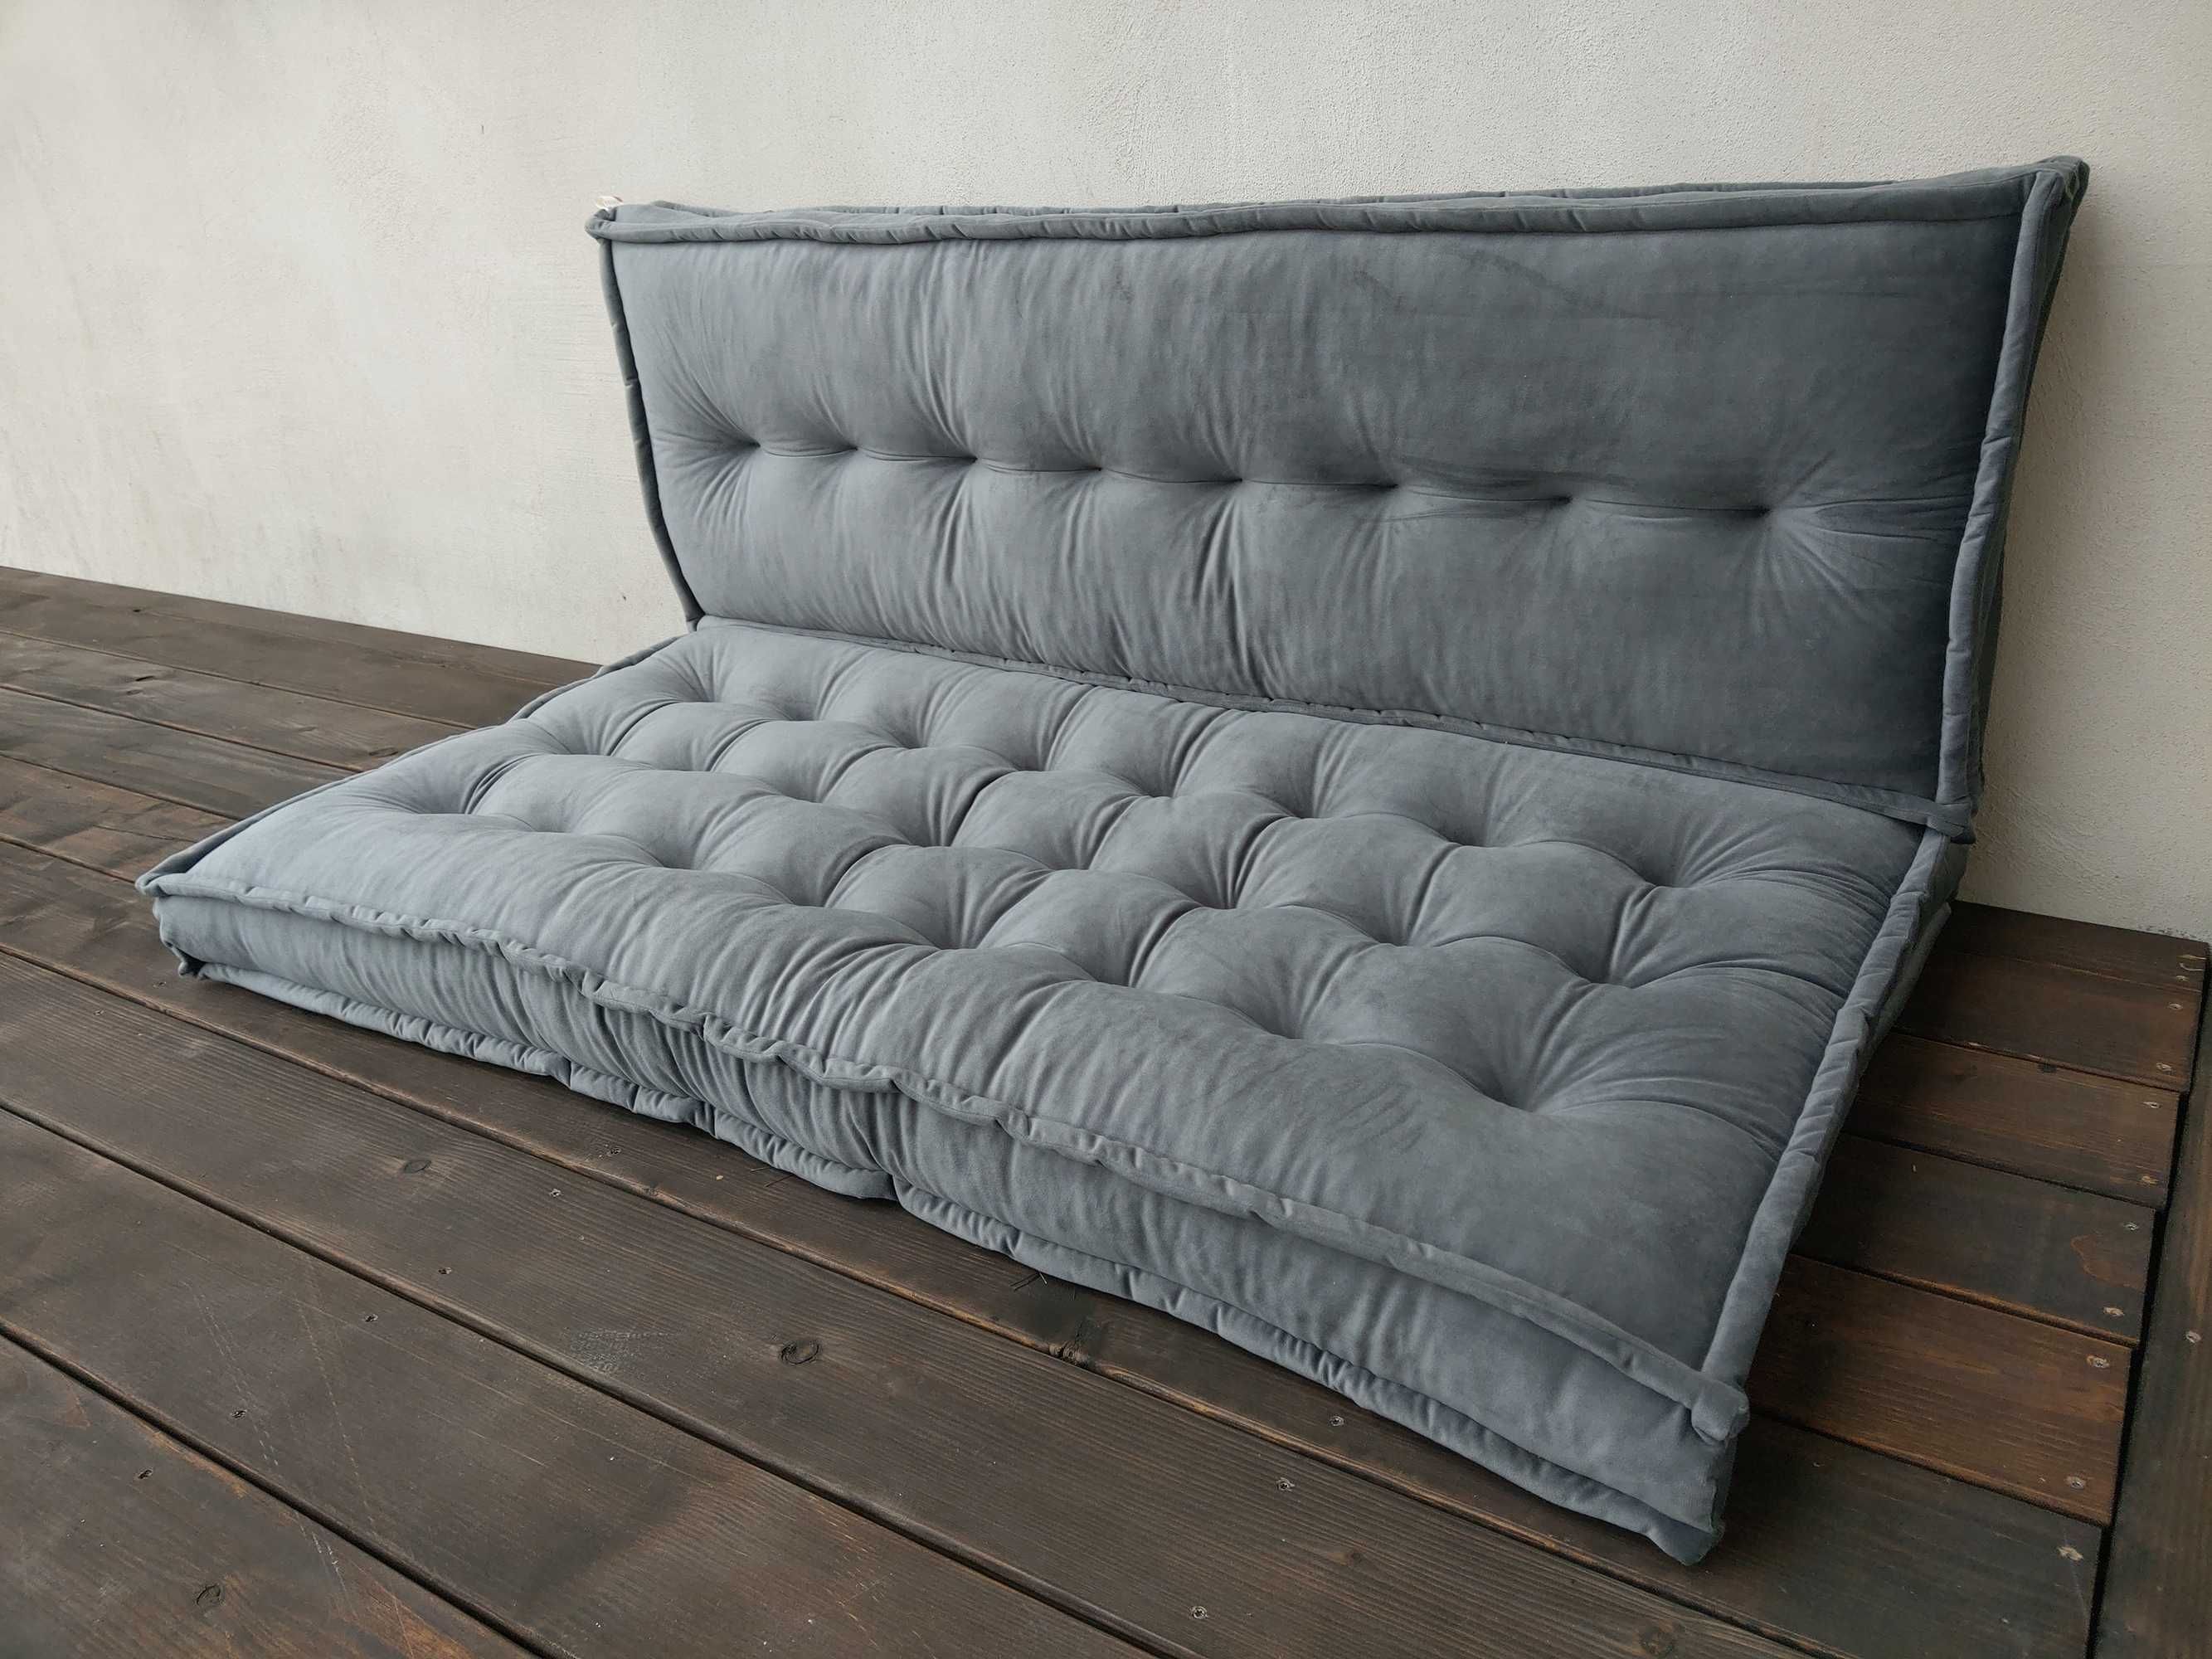 Sofa modułowa Futon materac francuski Velvet Siedzisko na podłogę